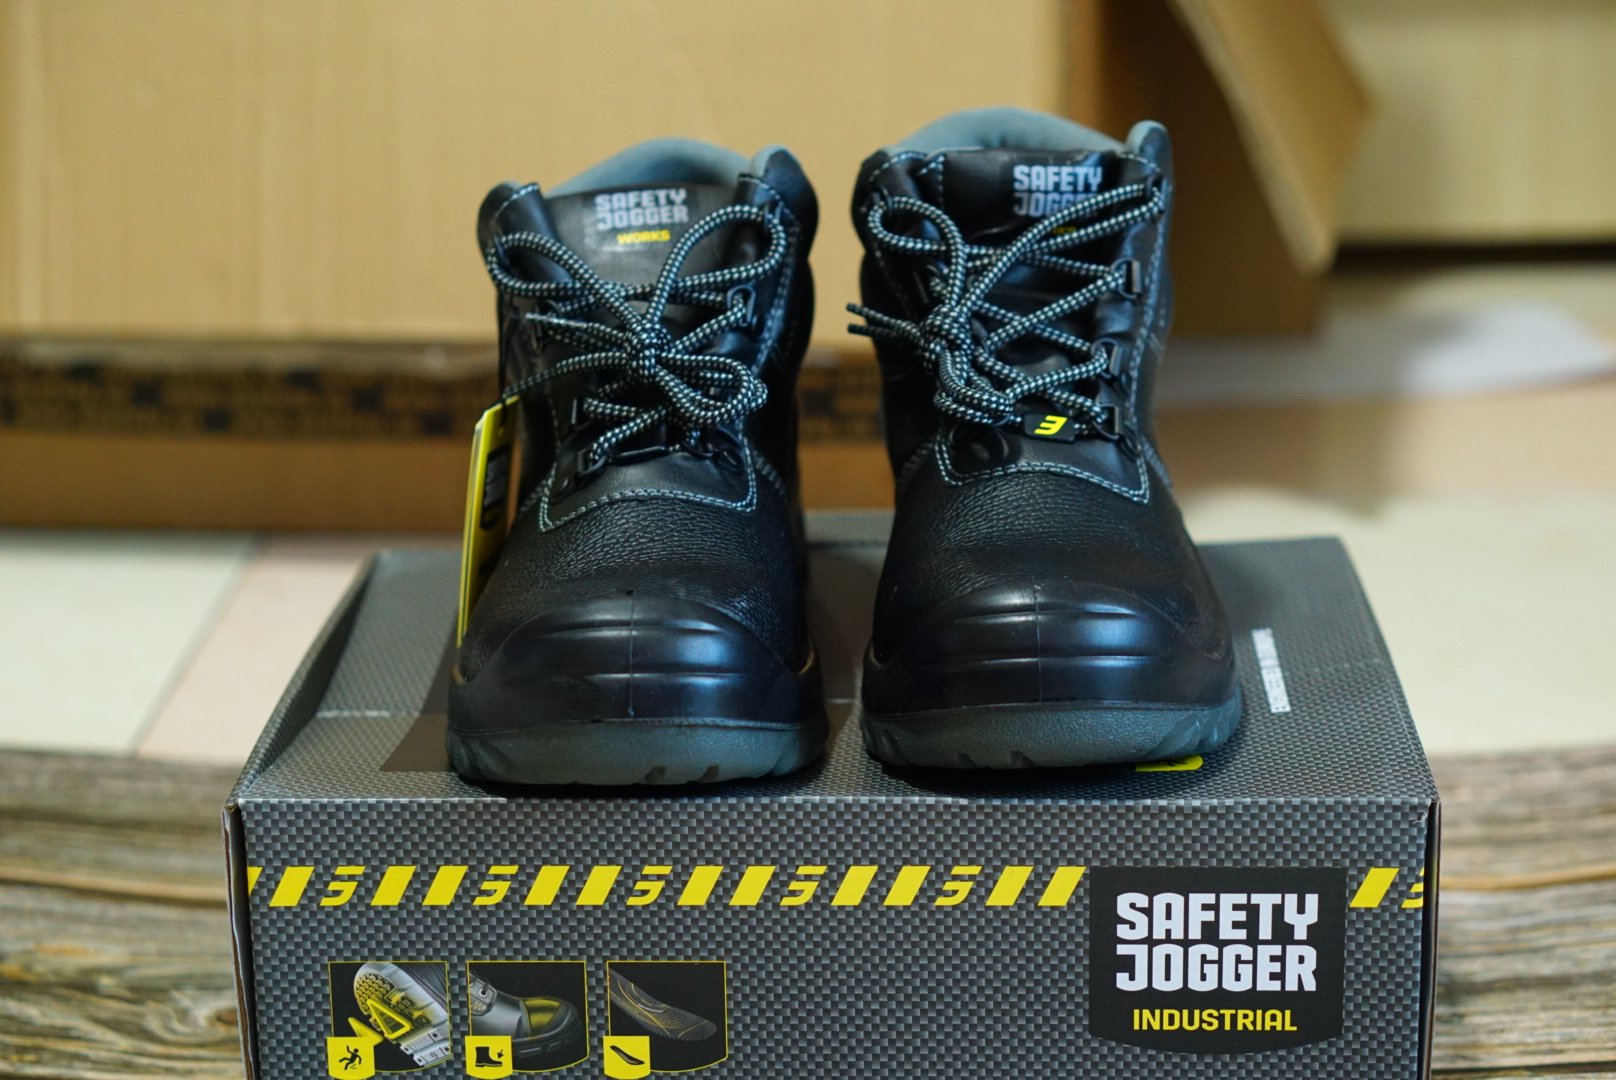 Giày bảo hộ lao động nam Jogger Bestboy S3 cổ cao, chống nước - Giày Safety Jogger chính hãng